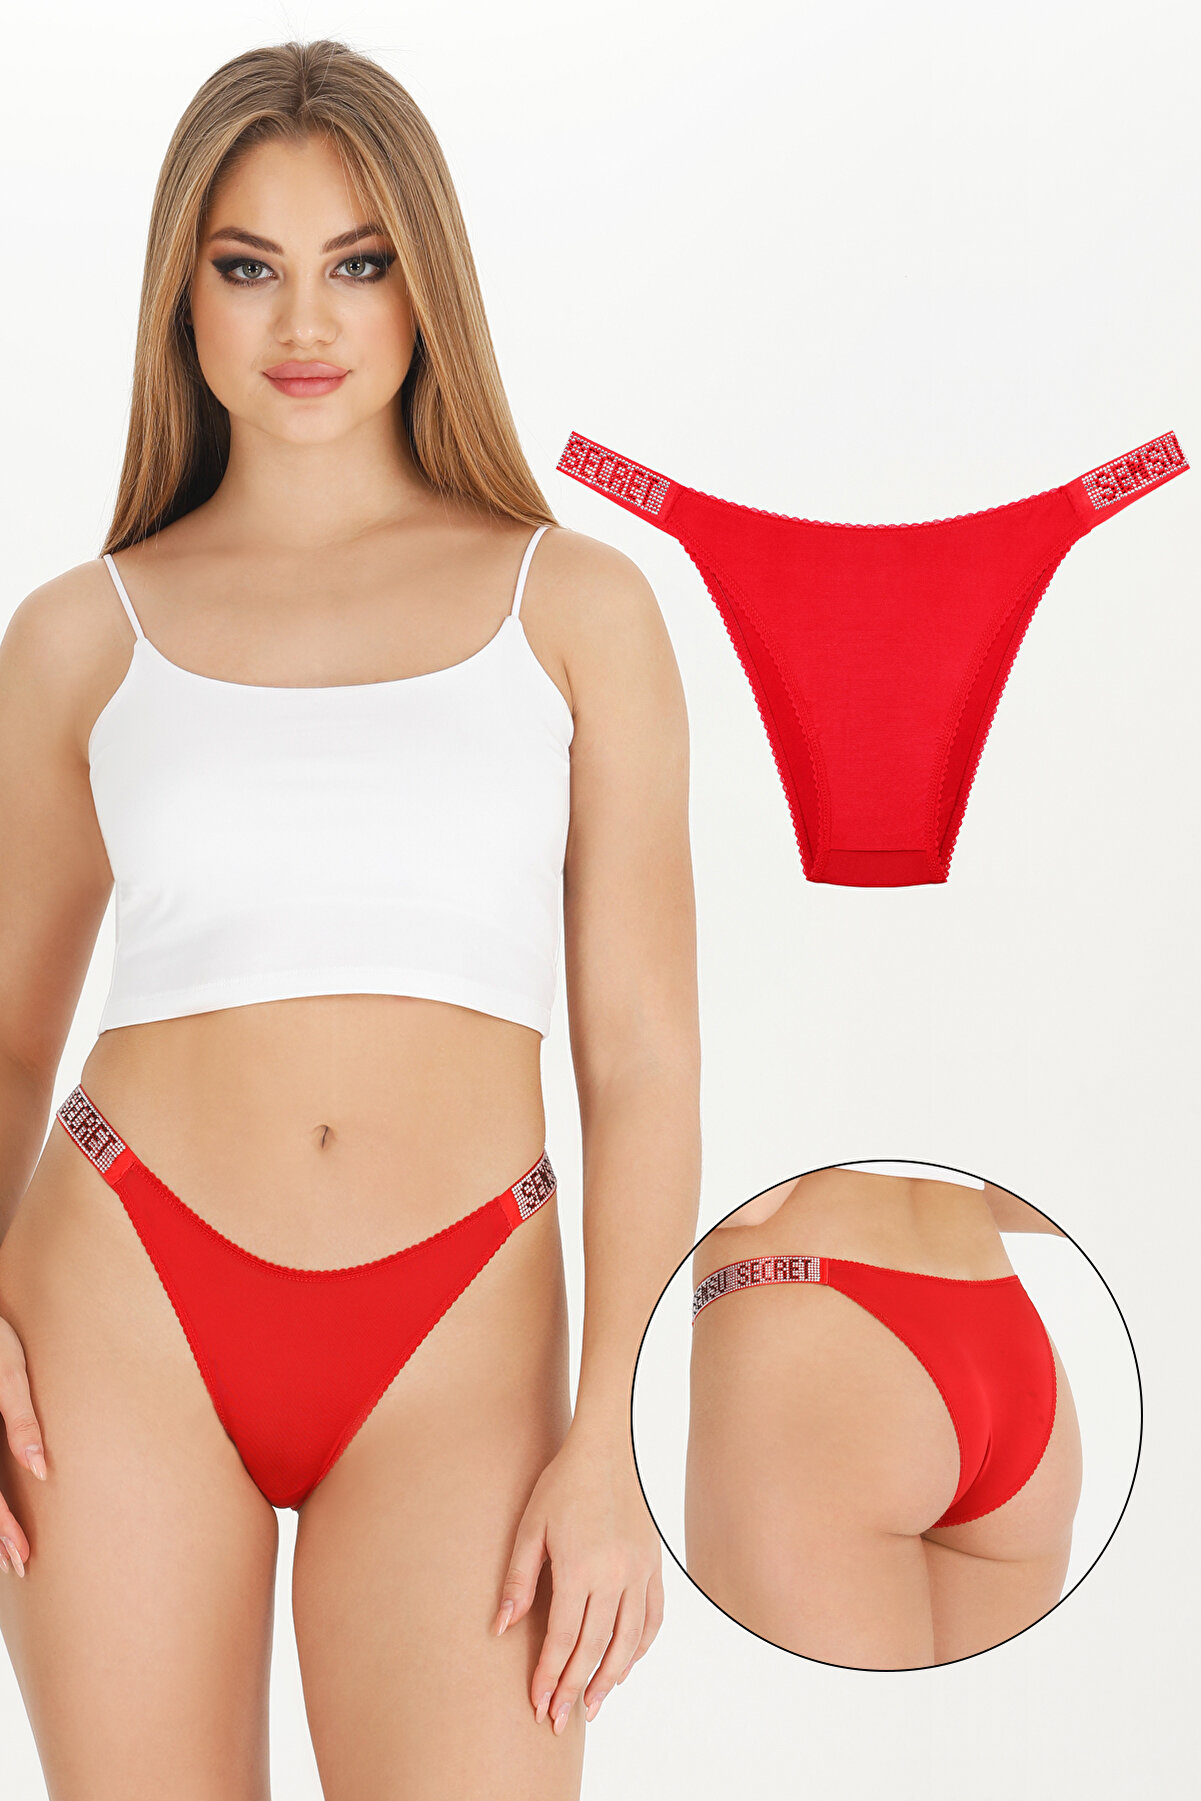 Sensu Kadın - Yılbaşı Özel Kırmızı Bikini Modeli Külot Ytk2020